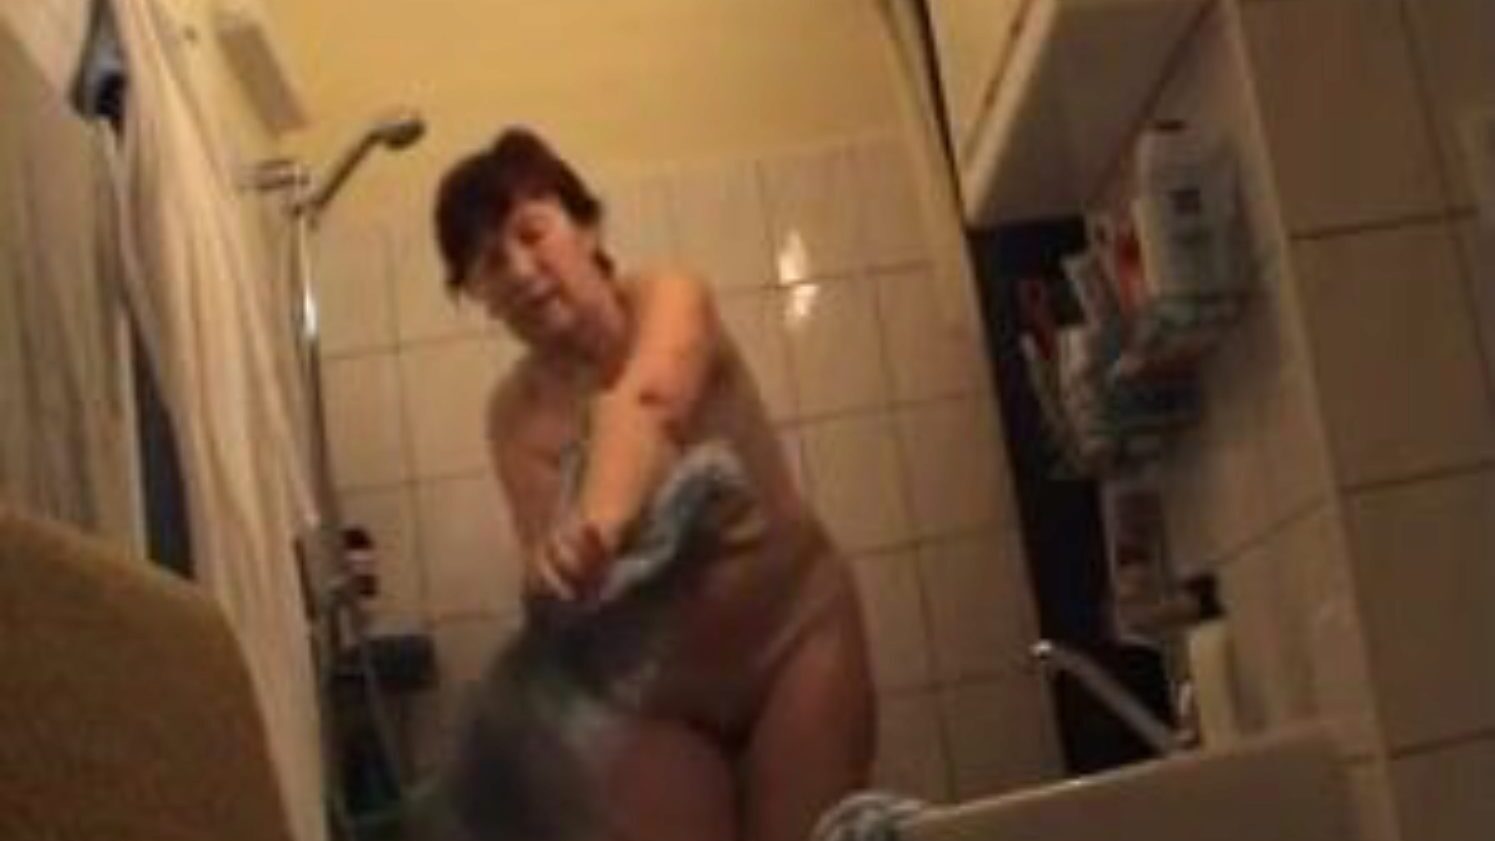 tysk bedstemor nøgen i badeværelset, gratis tyskere porno videoannonce se tysk bedstemor nøgen i badeværelset filmscene på xhamster, det største sex-tube site med masser af gratis tyskere nøgen bedstemor & modne porno vids